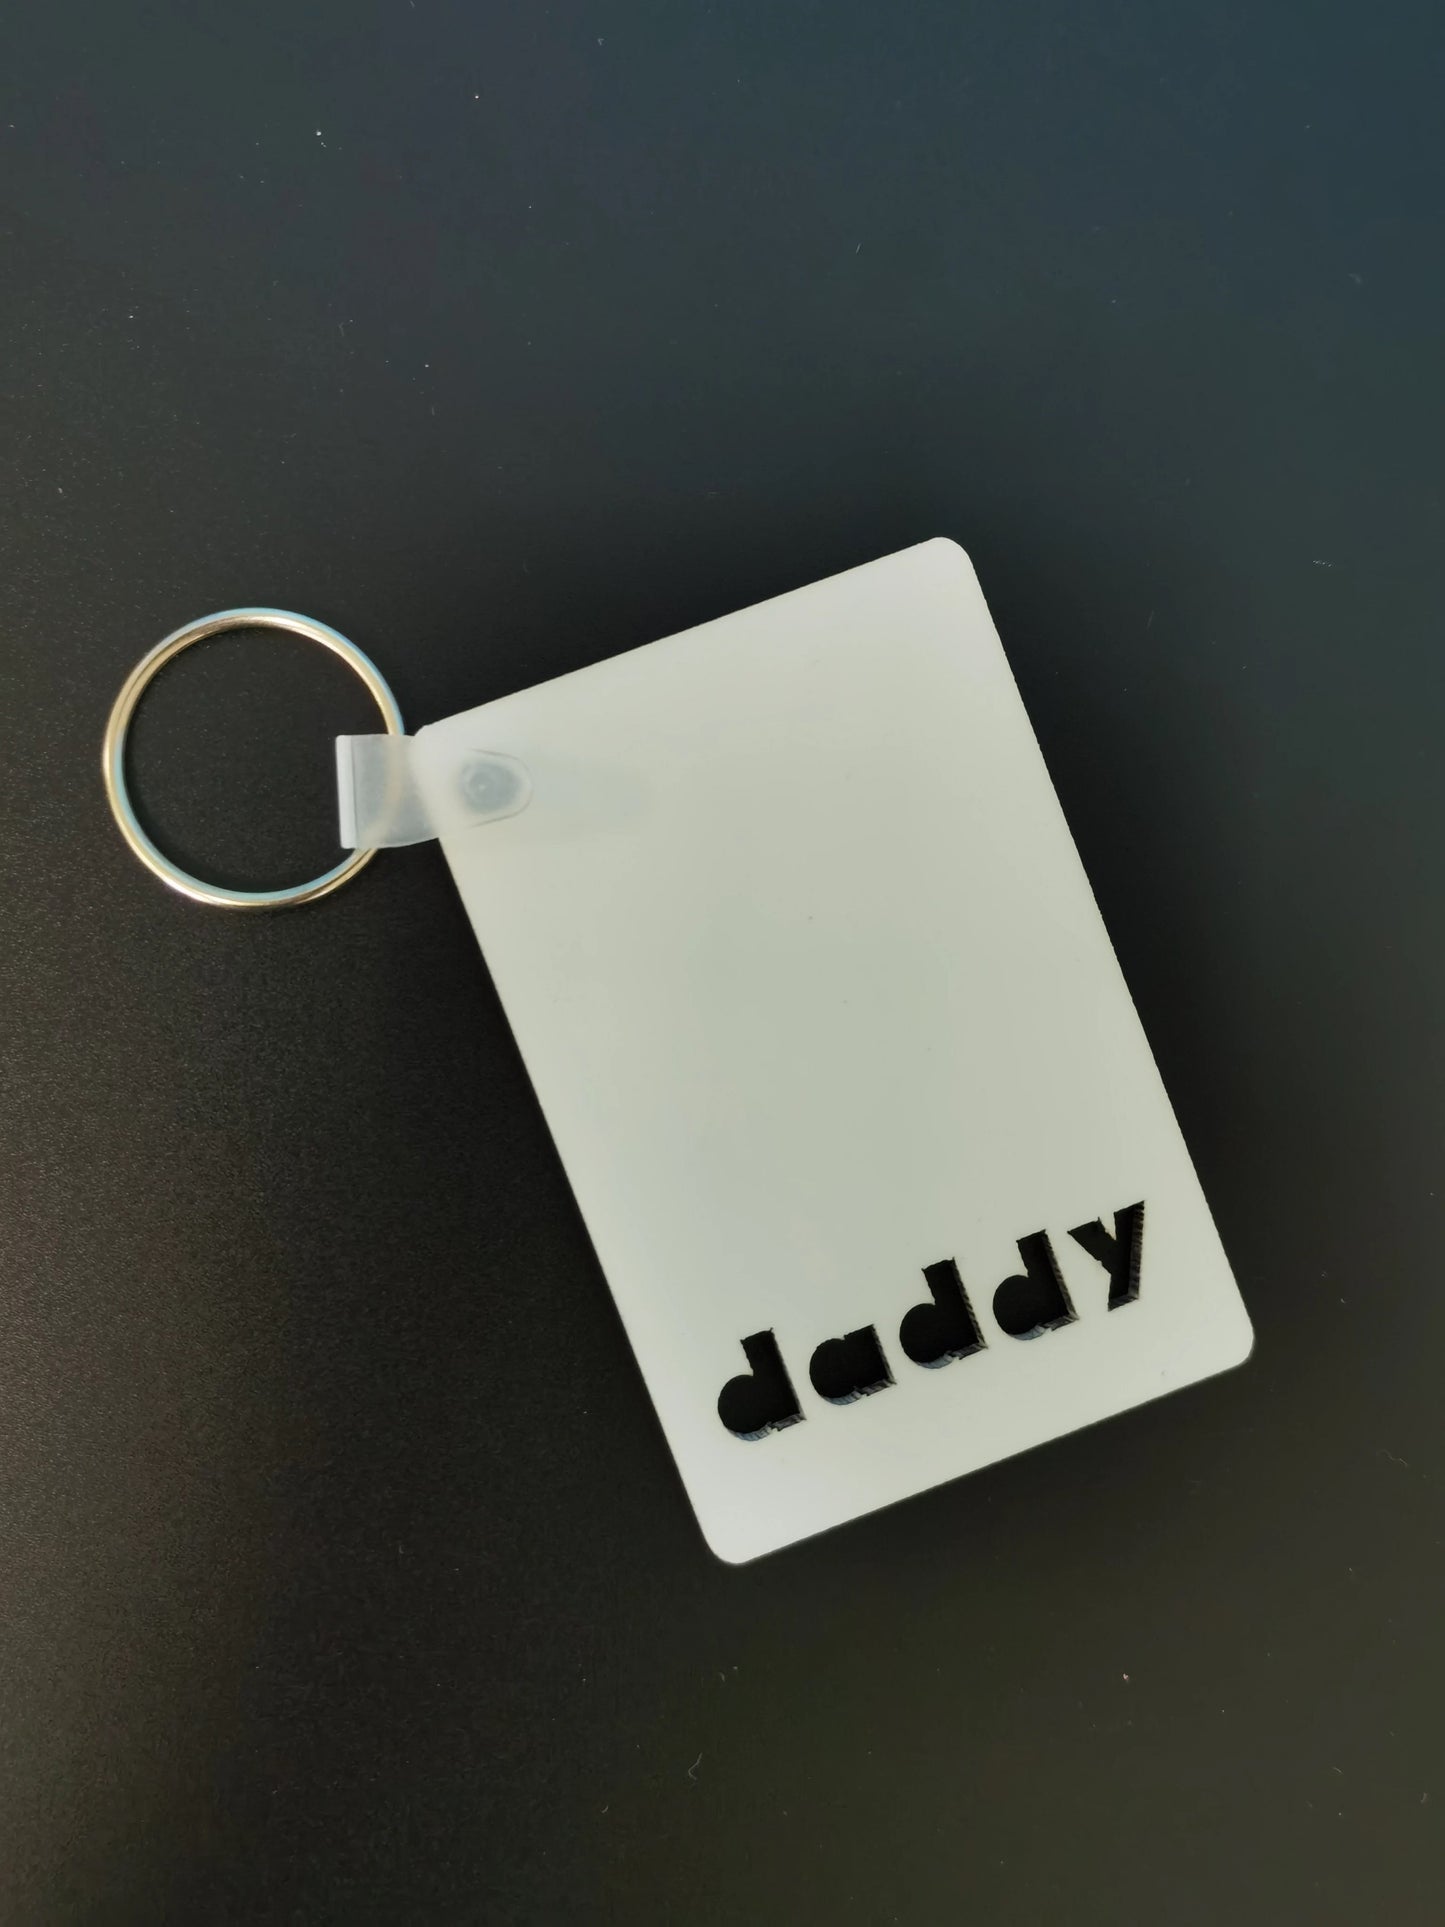 Daddy Key Chain